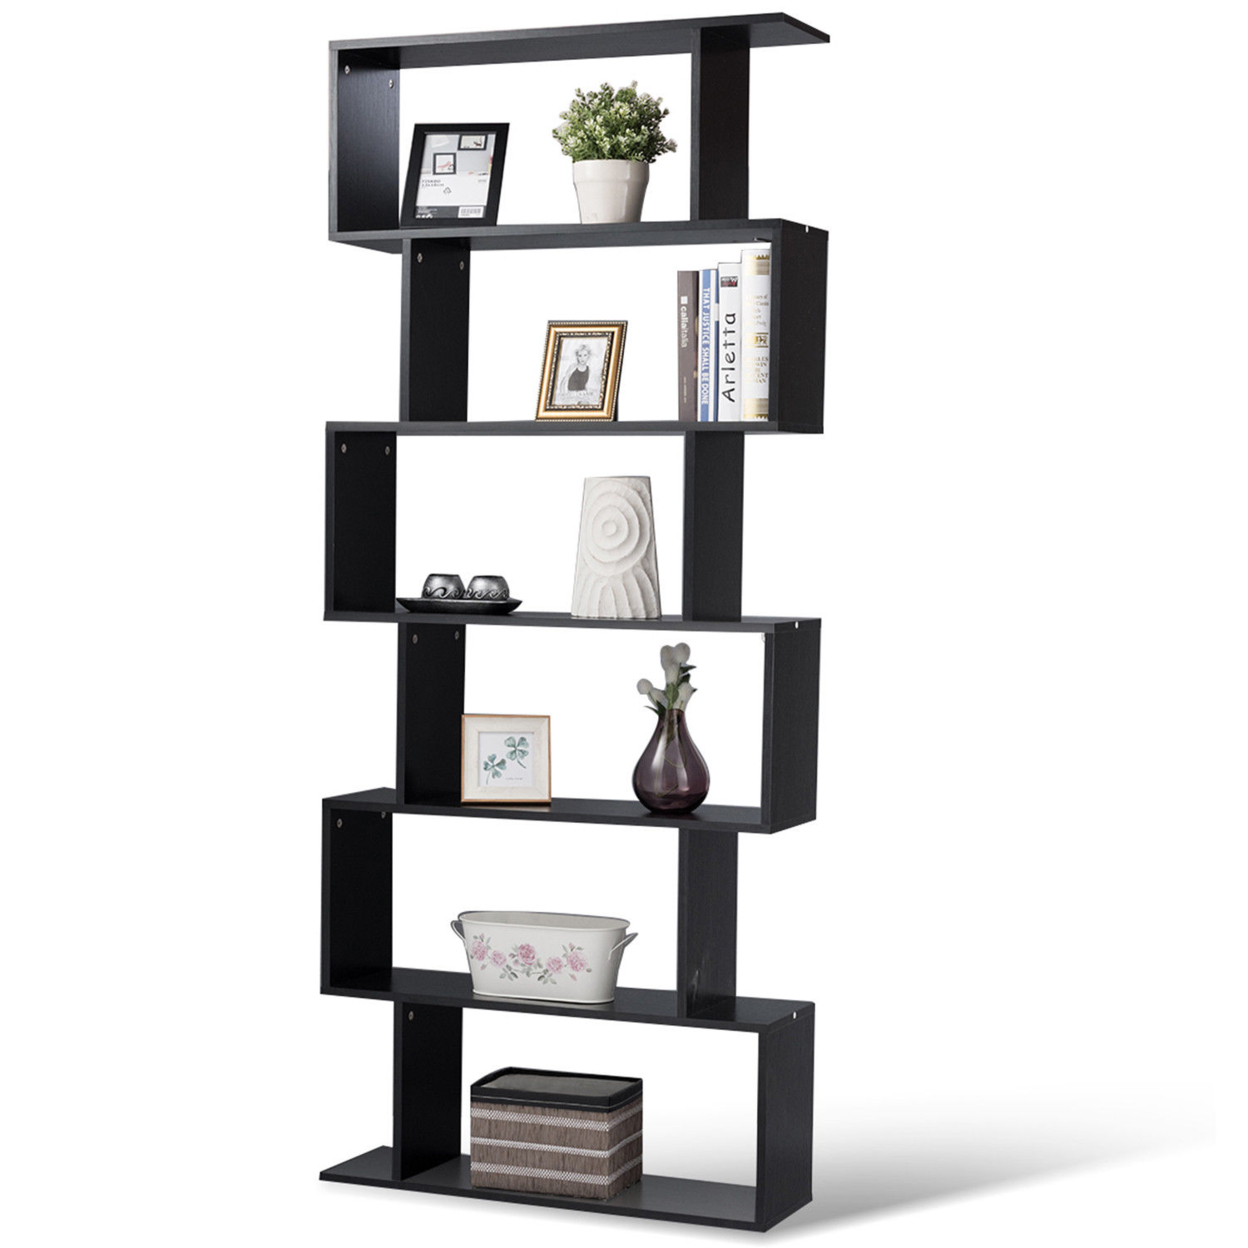 6 Tier S-Shaped Bookcase Z-Shelf Style Storage Display Modern Bookshelf Black